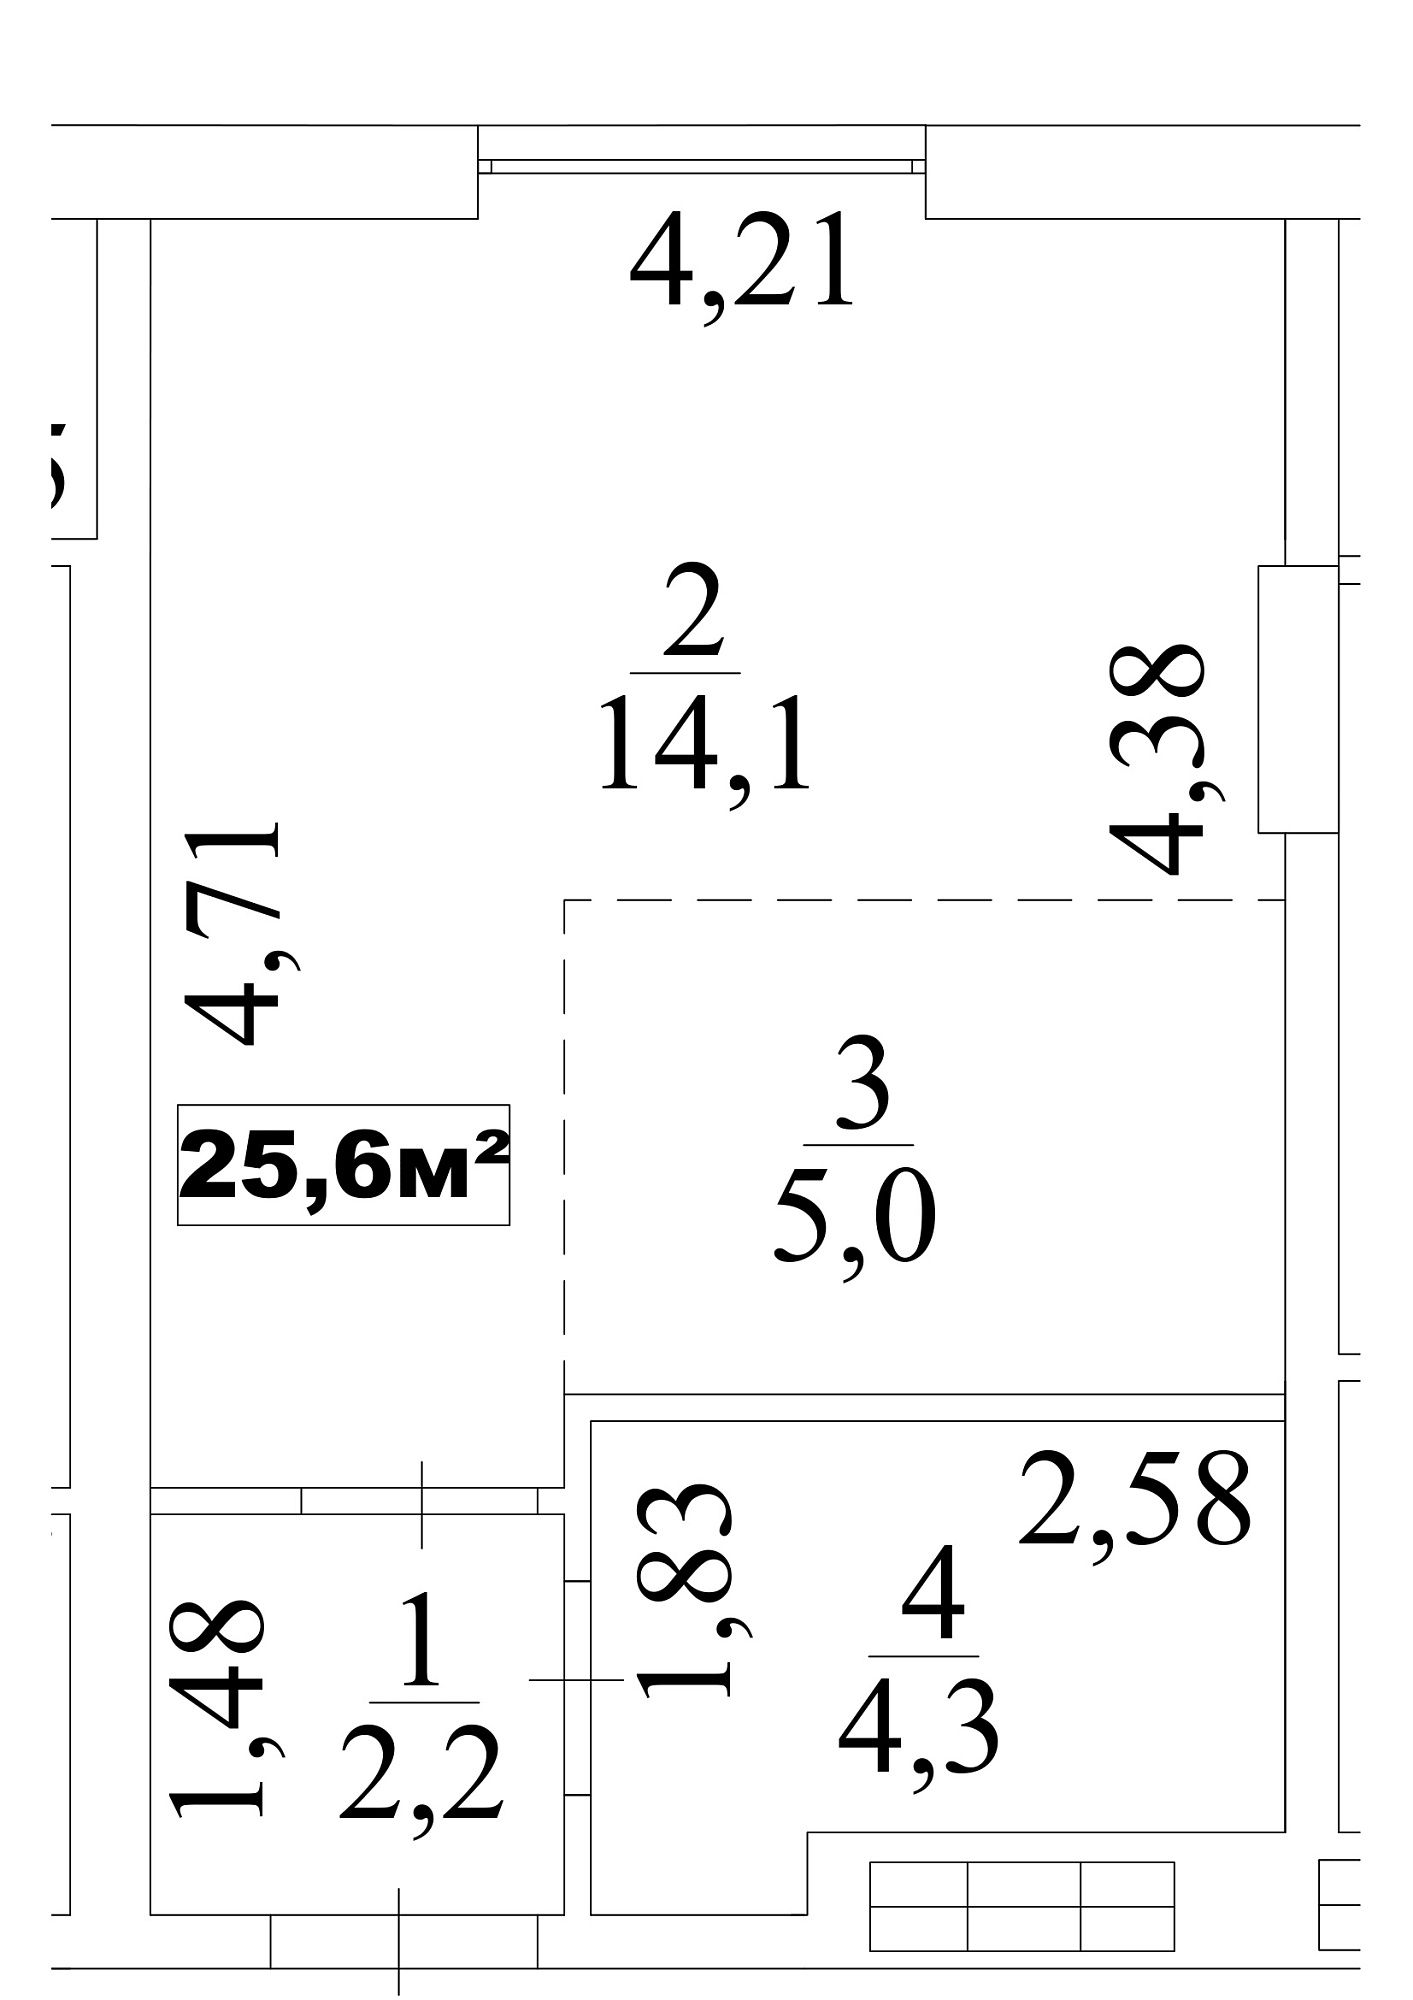 Планування Smart-квартира площею 25.6м2, AB-10-04/0030в.